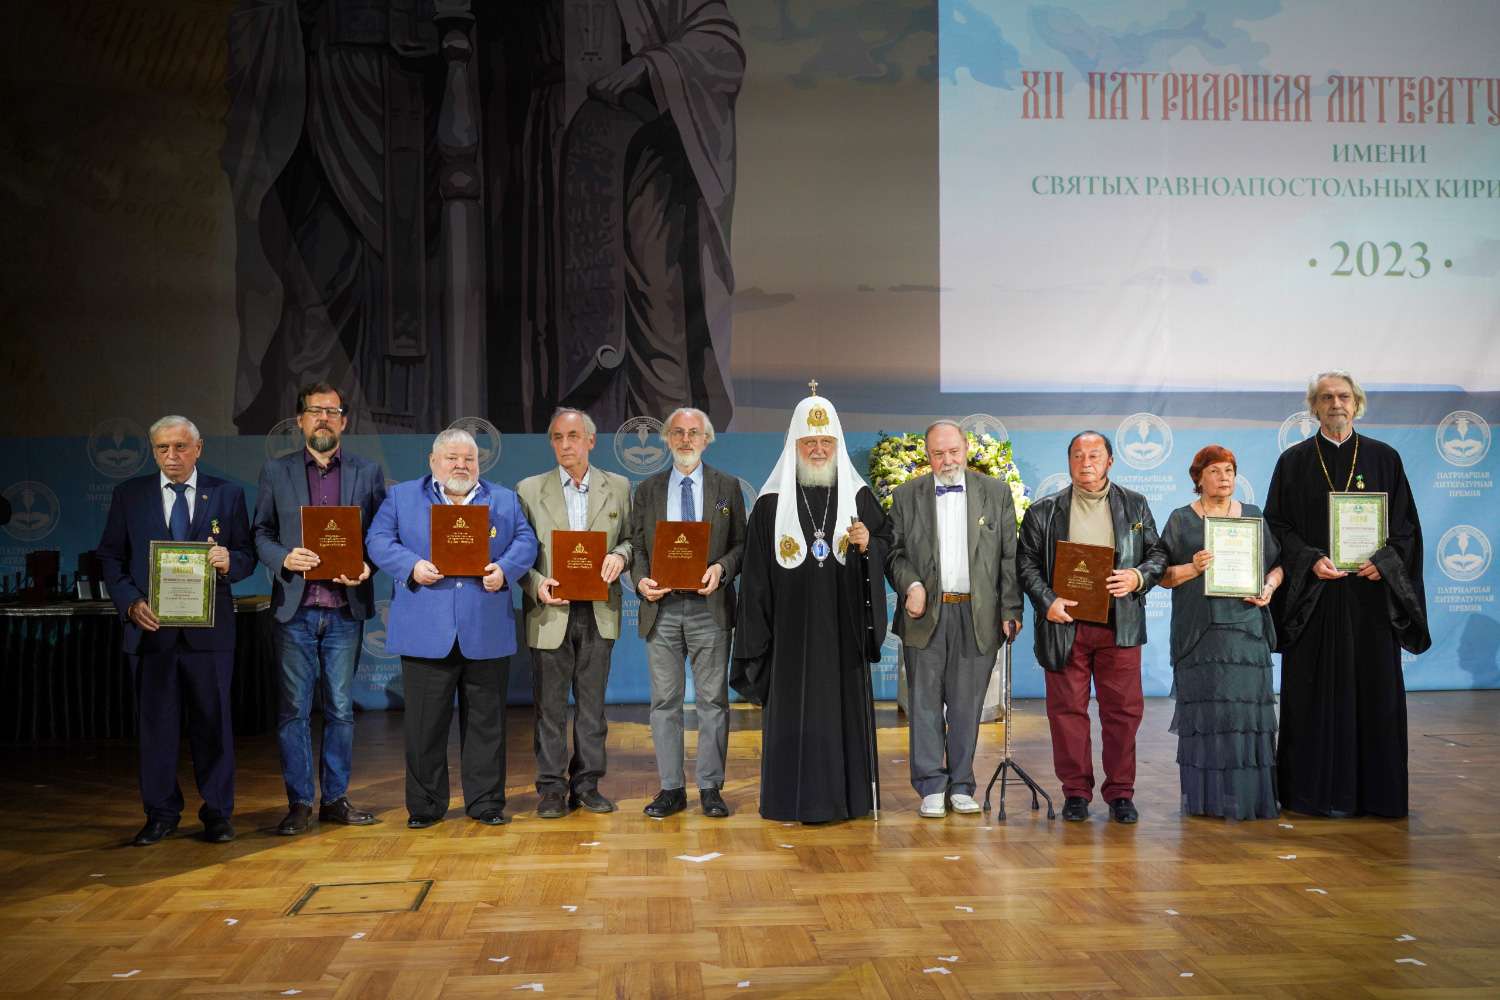 Лауреатами Патриаршей литературной премии 2023 года стали протоиерей Владимир Вигилянский, Светлана Кекова и Валерий Хайрюзов